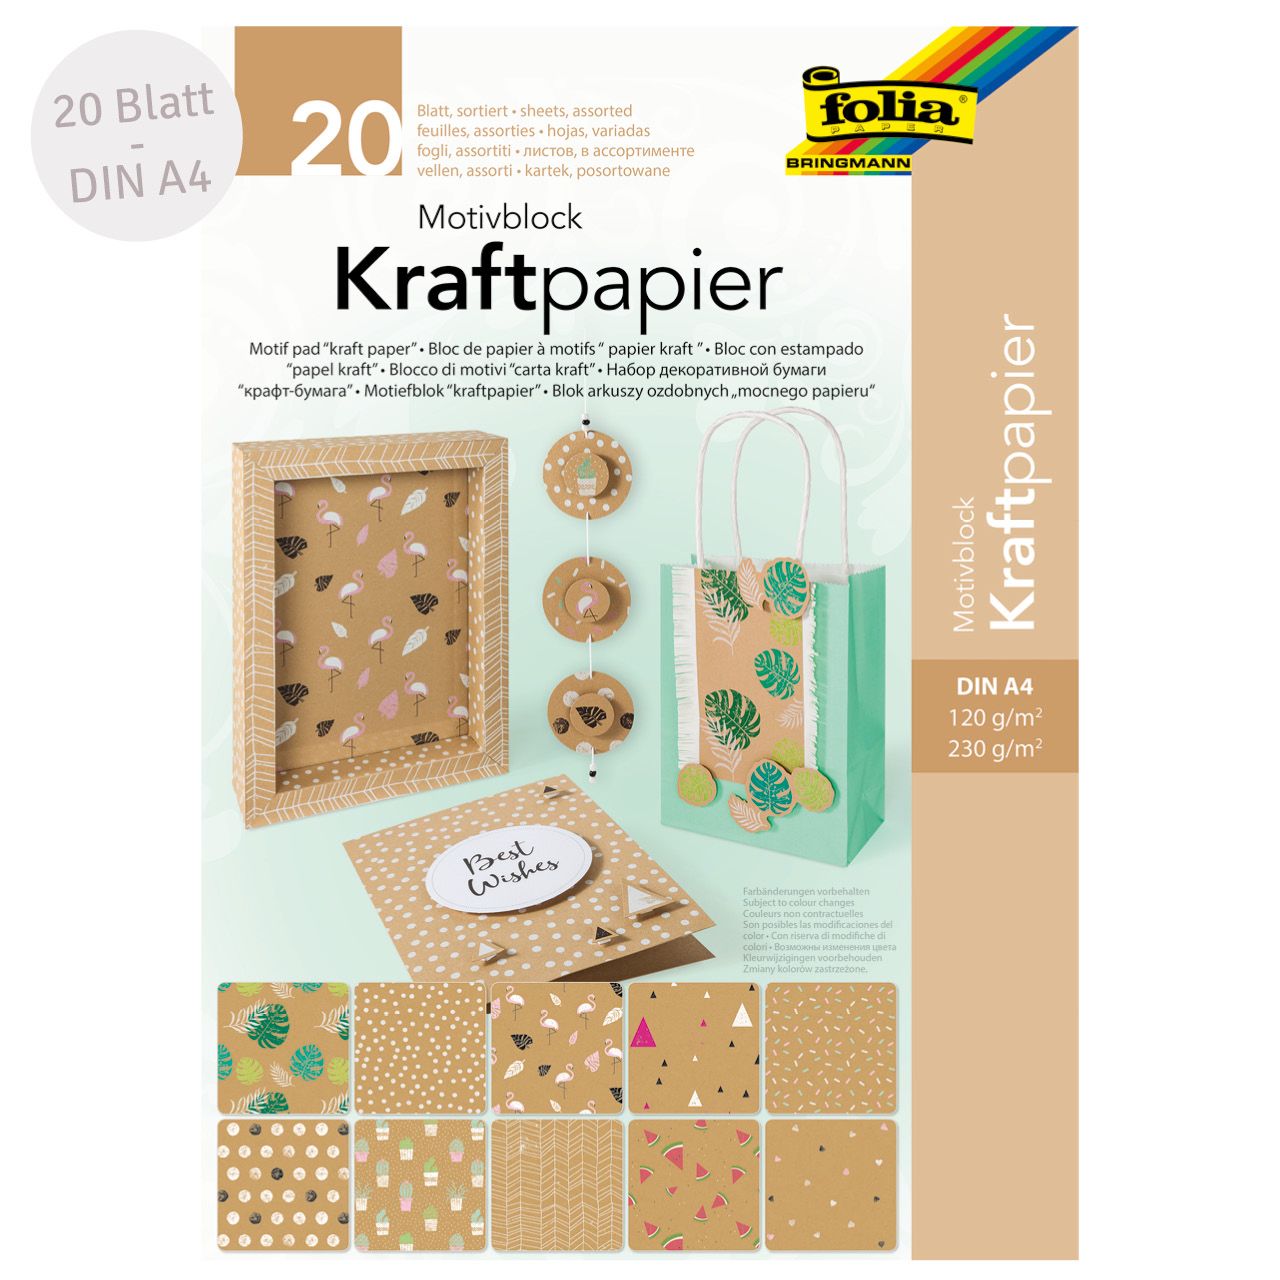 Motivblock Kraftpapier – 20 Blatt Motivpapier & -karton